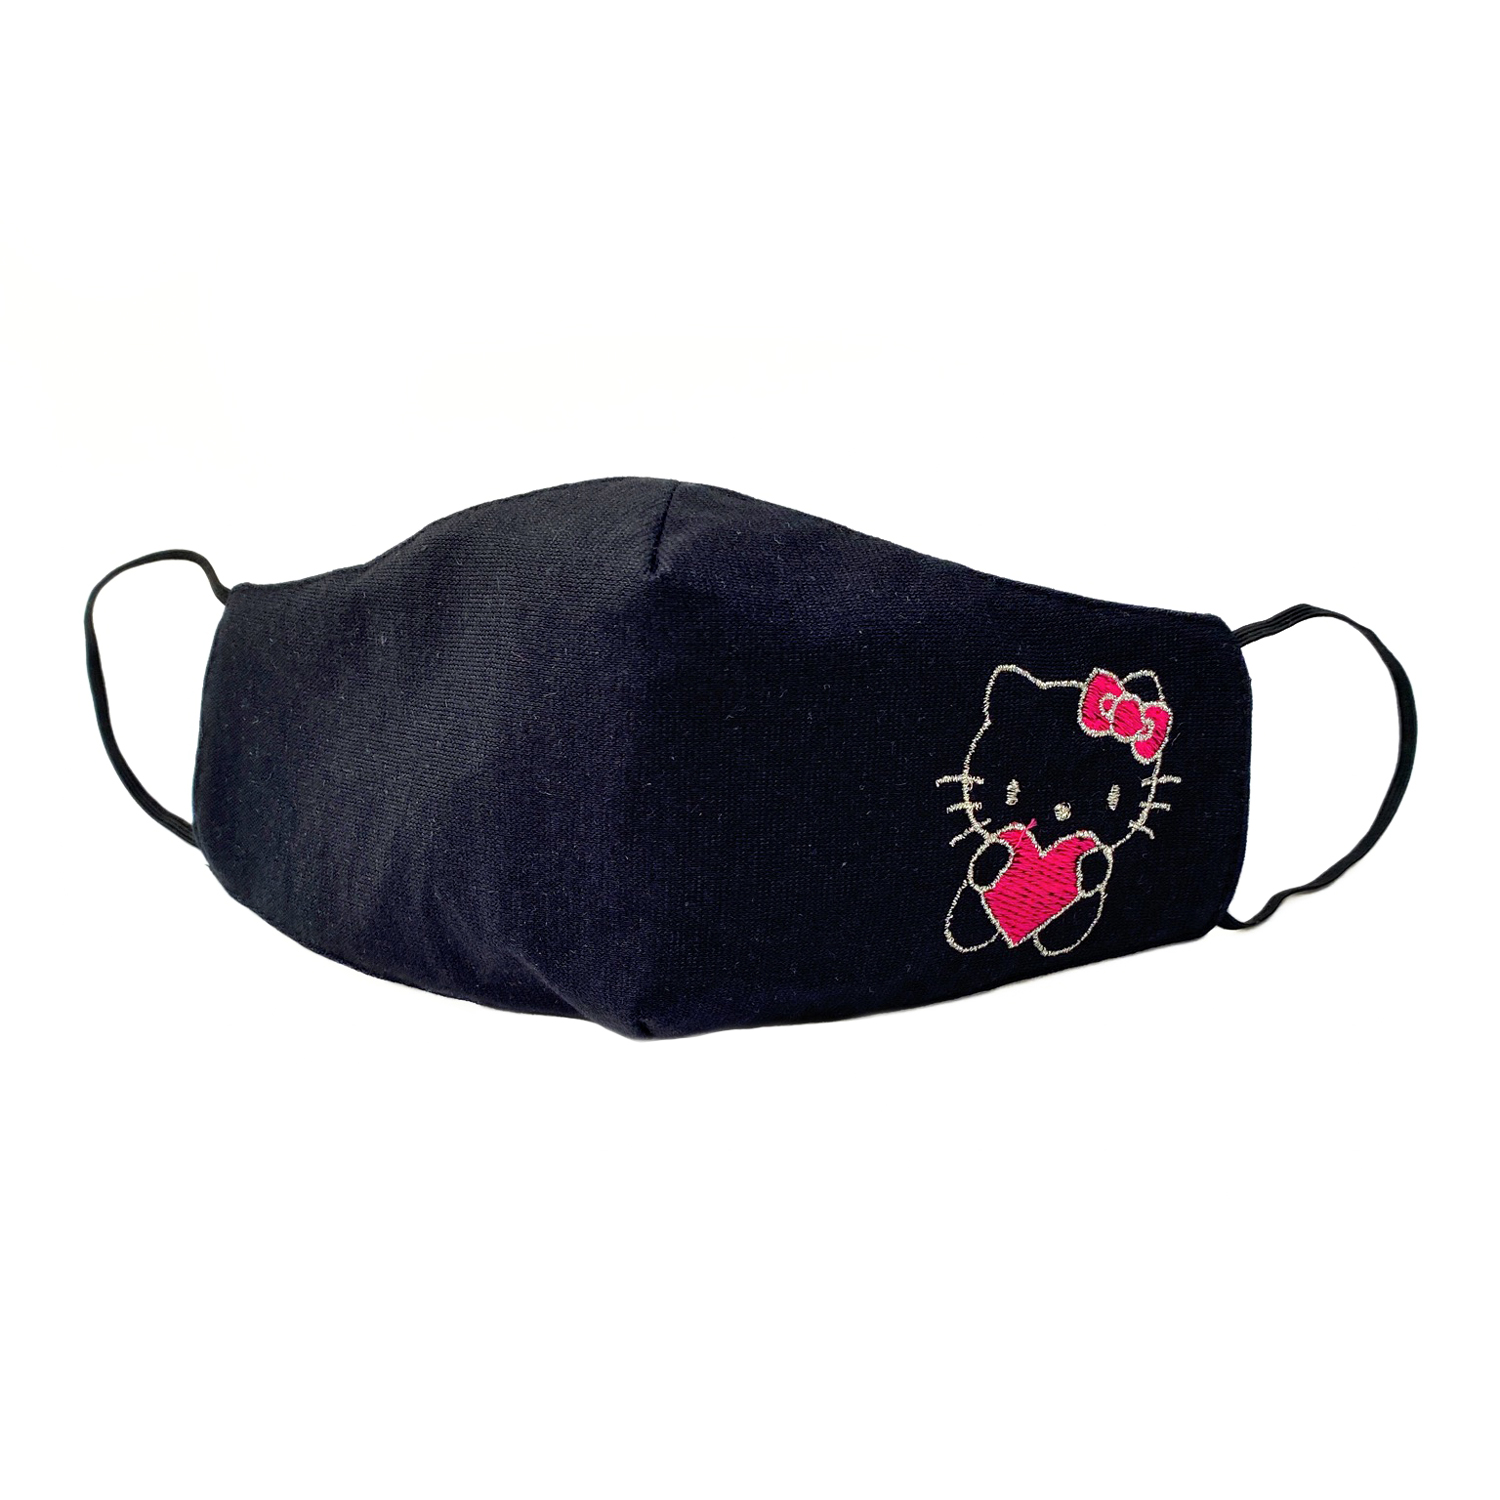 Детская защитная маска для лица "Hello Kitty" черная